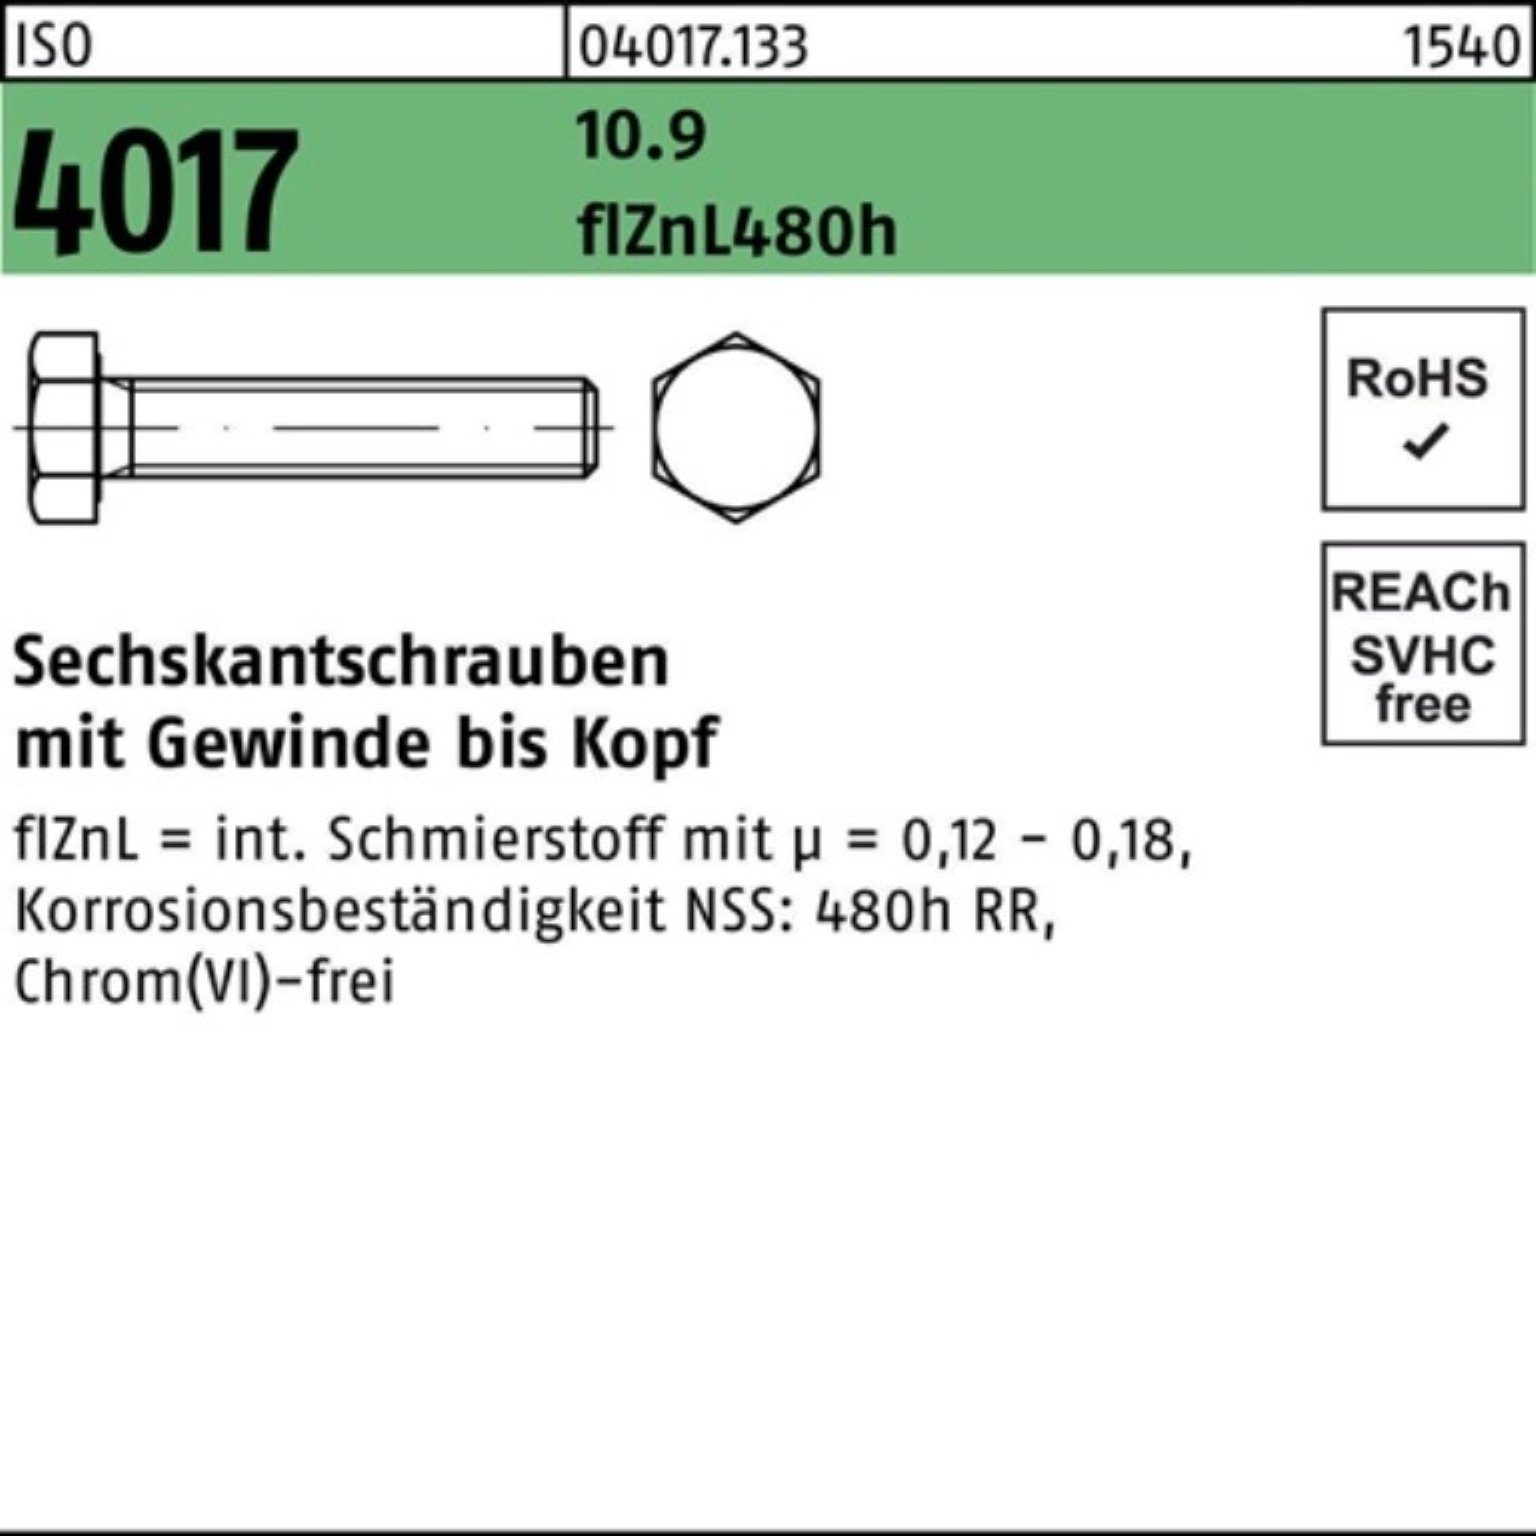 Bufab Sechskantschraube 2 80 4017 VG M24x Pack ISO Sechskantschraube 10.9 100er zinklamellenb